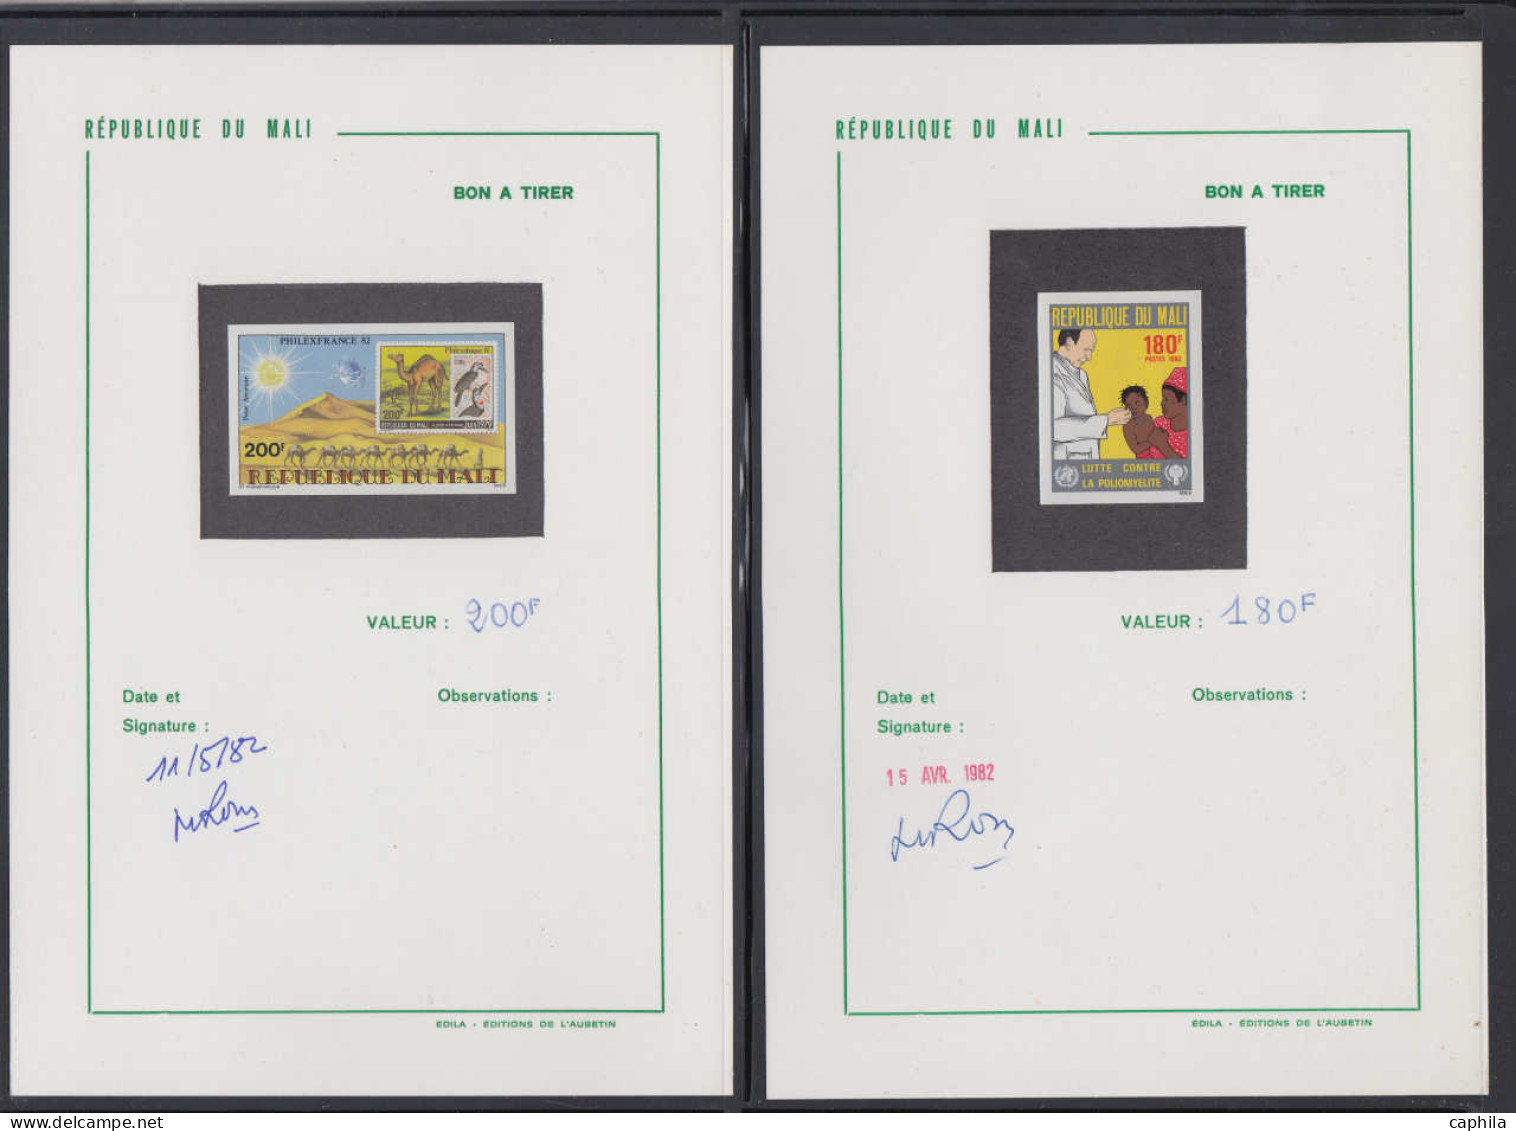 BAT COLONIES FRANCAISES - Epreuves d'Artiste - Collection de 69 bons à tirer, tous signés et datés (période 1980/88, Afr